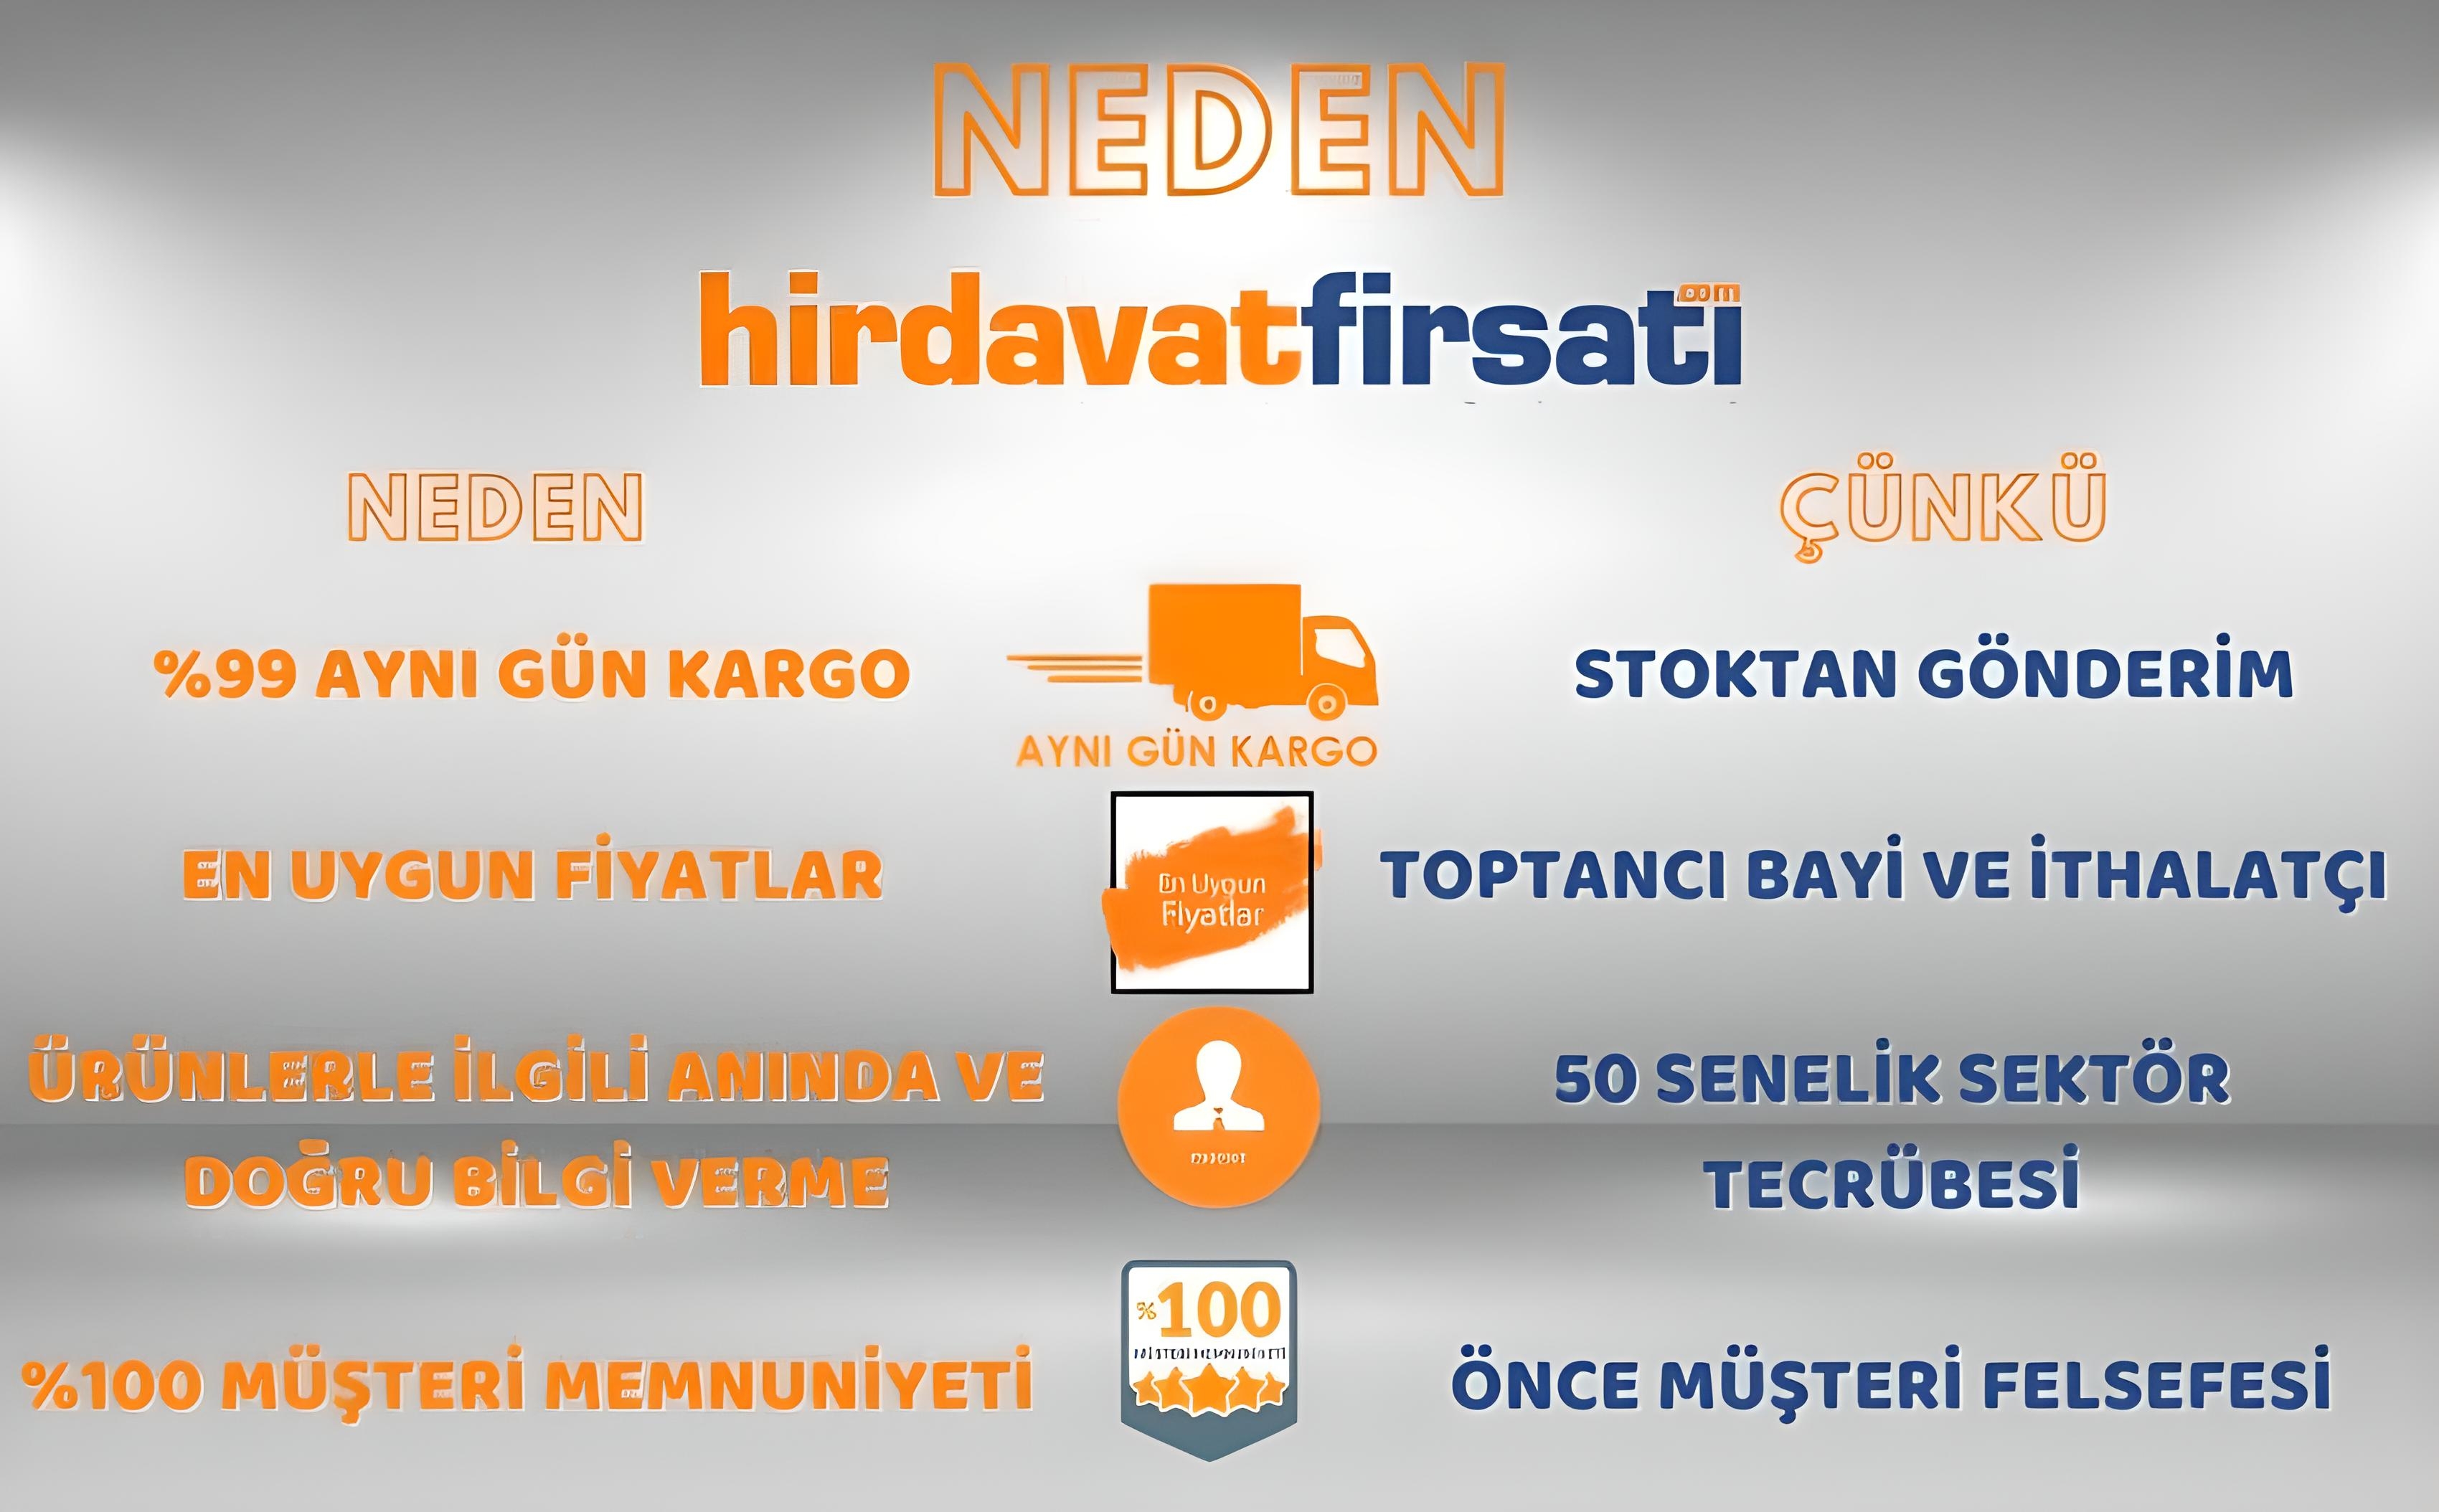 Neden www.hirdavatfirsati.com?